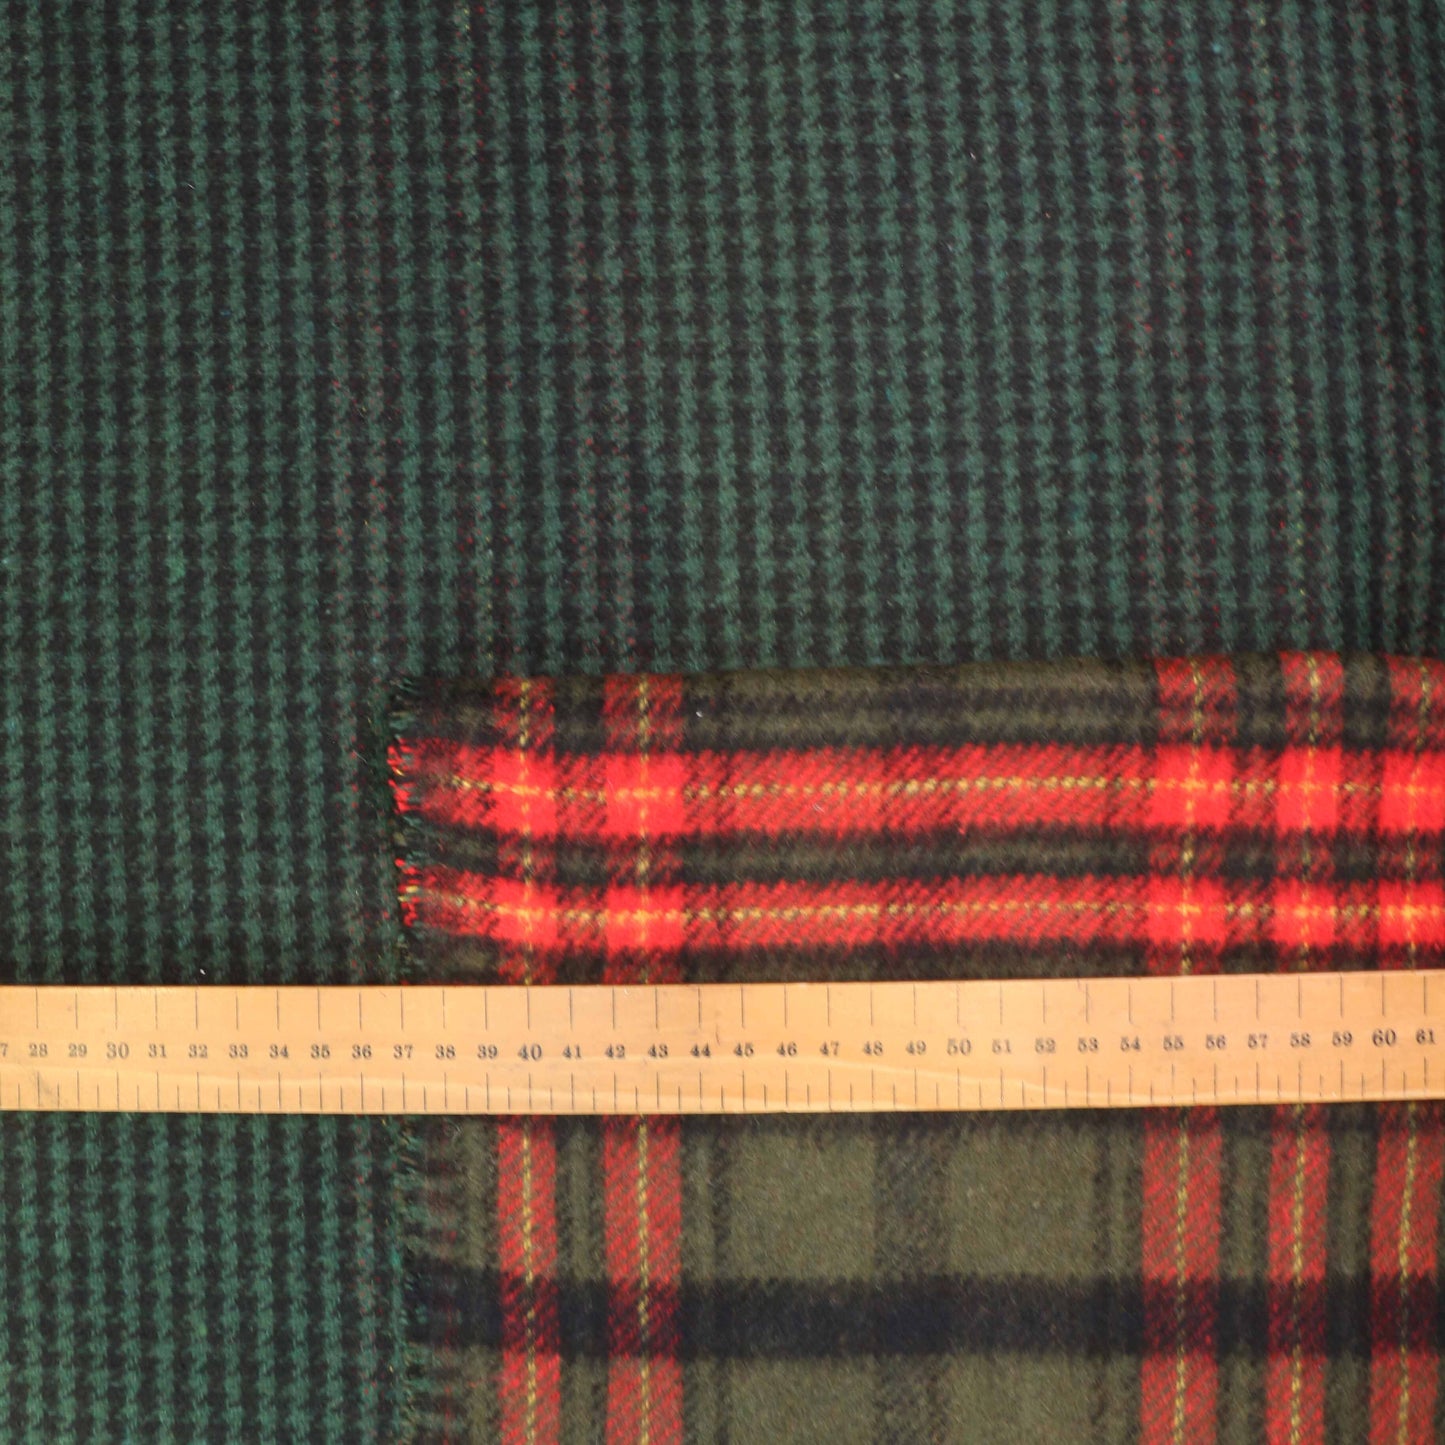 Reversible Wool Coating - Beige, Brown, Green